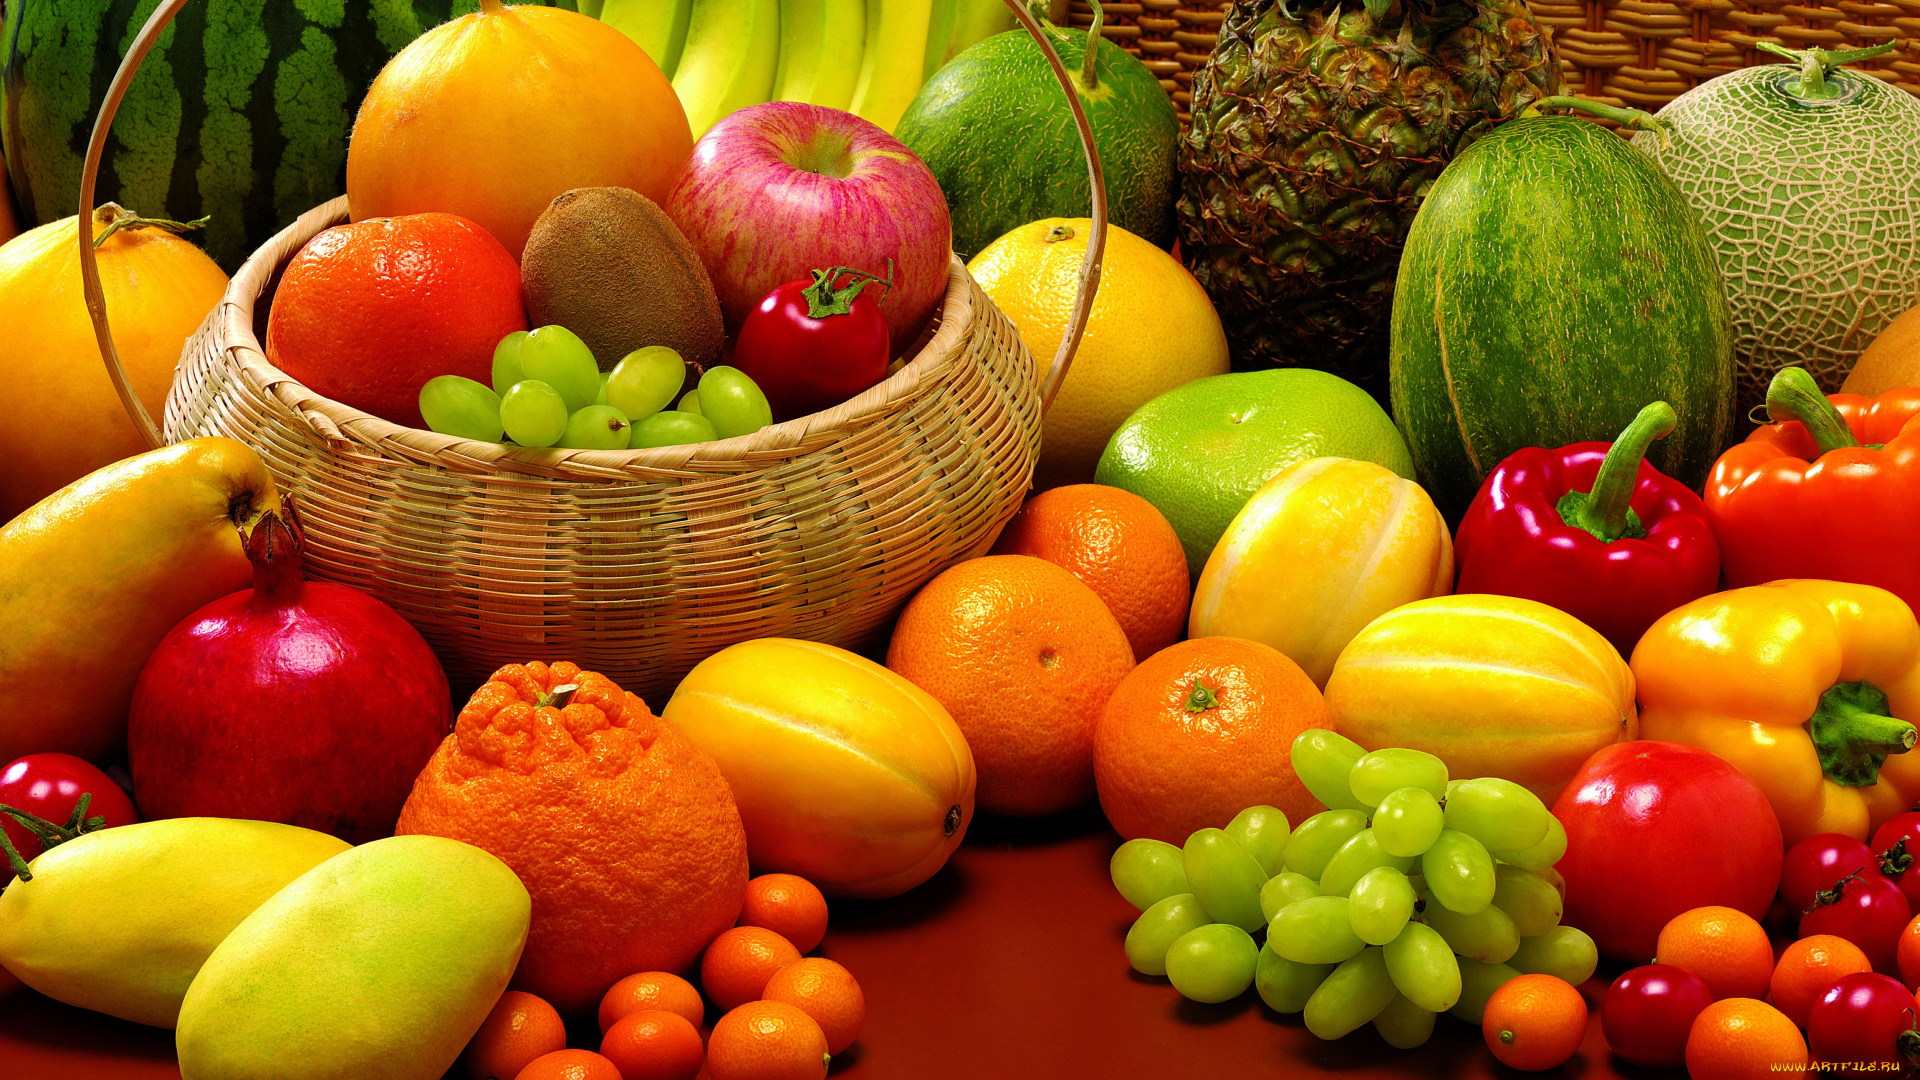 еда, фрукты, овощи, вместе, дыни, бананы, гранат, арбуз, натюрморт, крзинка, ананас, кумкваты, виноград, помидоры, паприка, мандарины, томаты